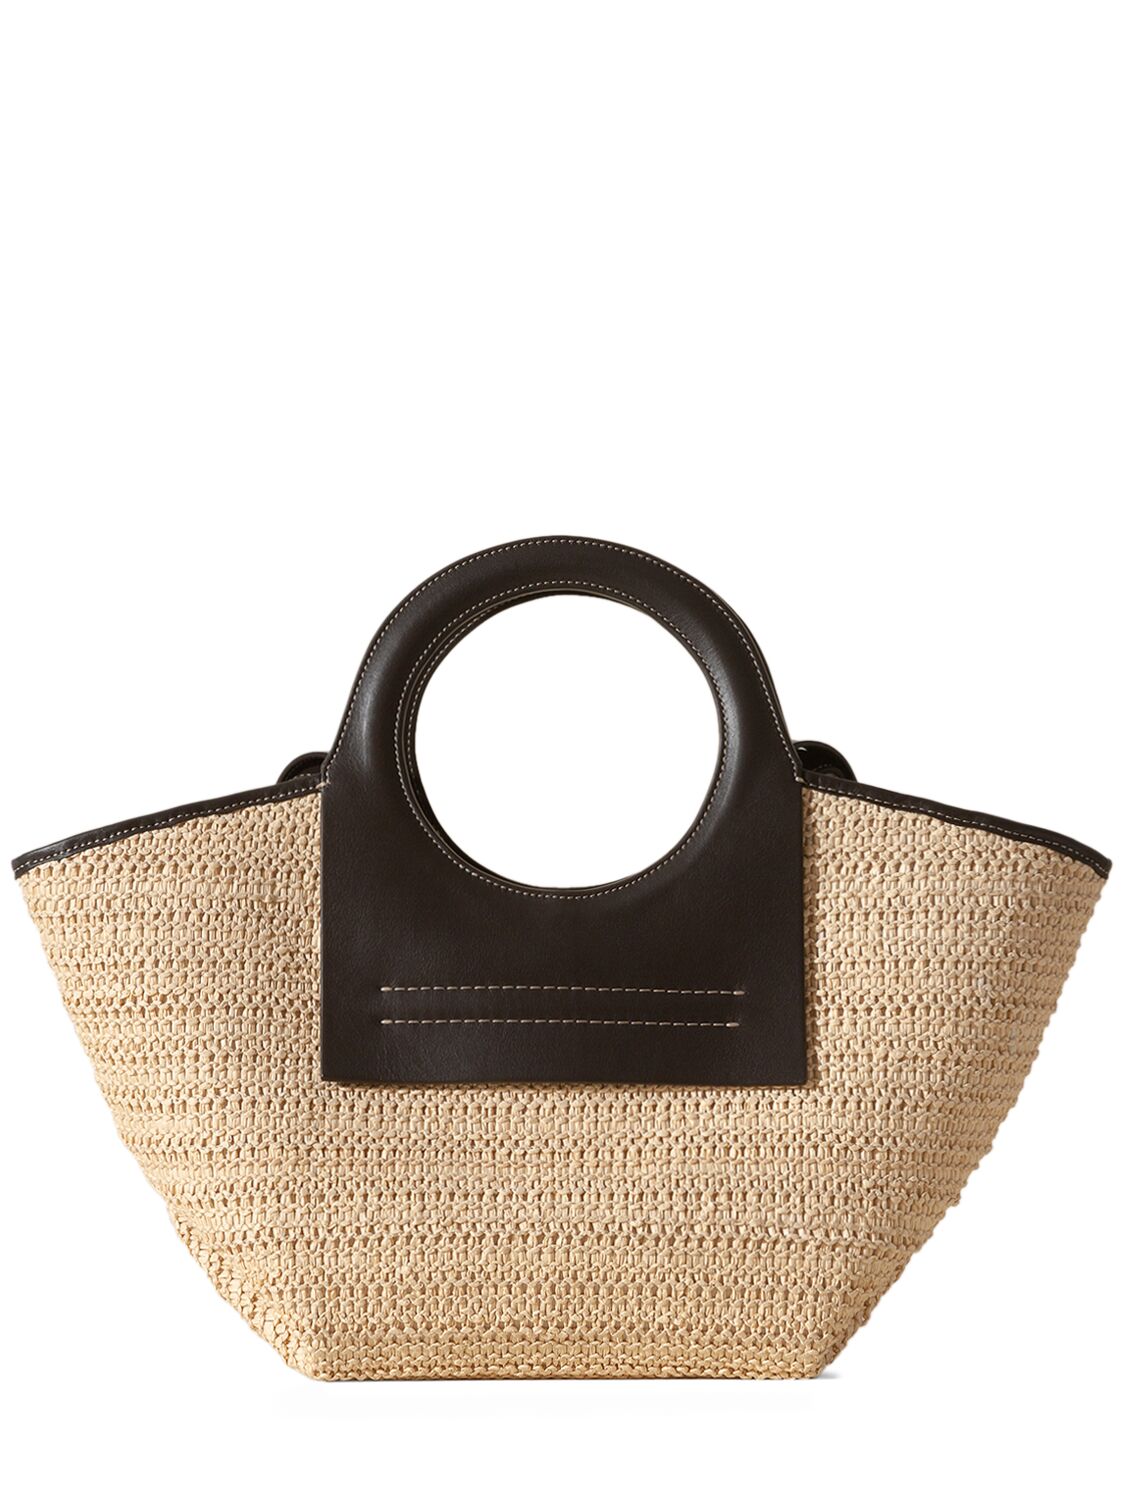 Image of Small Cala Raffia Top Handle Bag